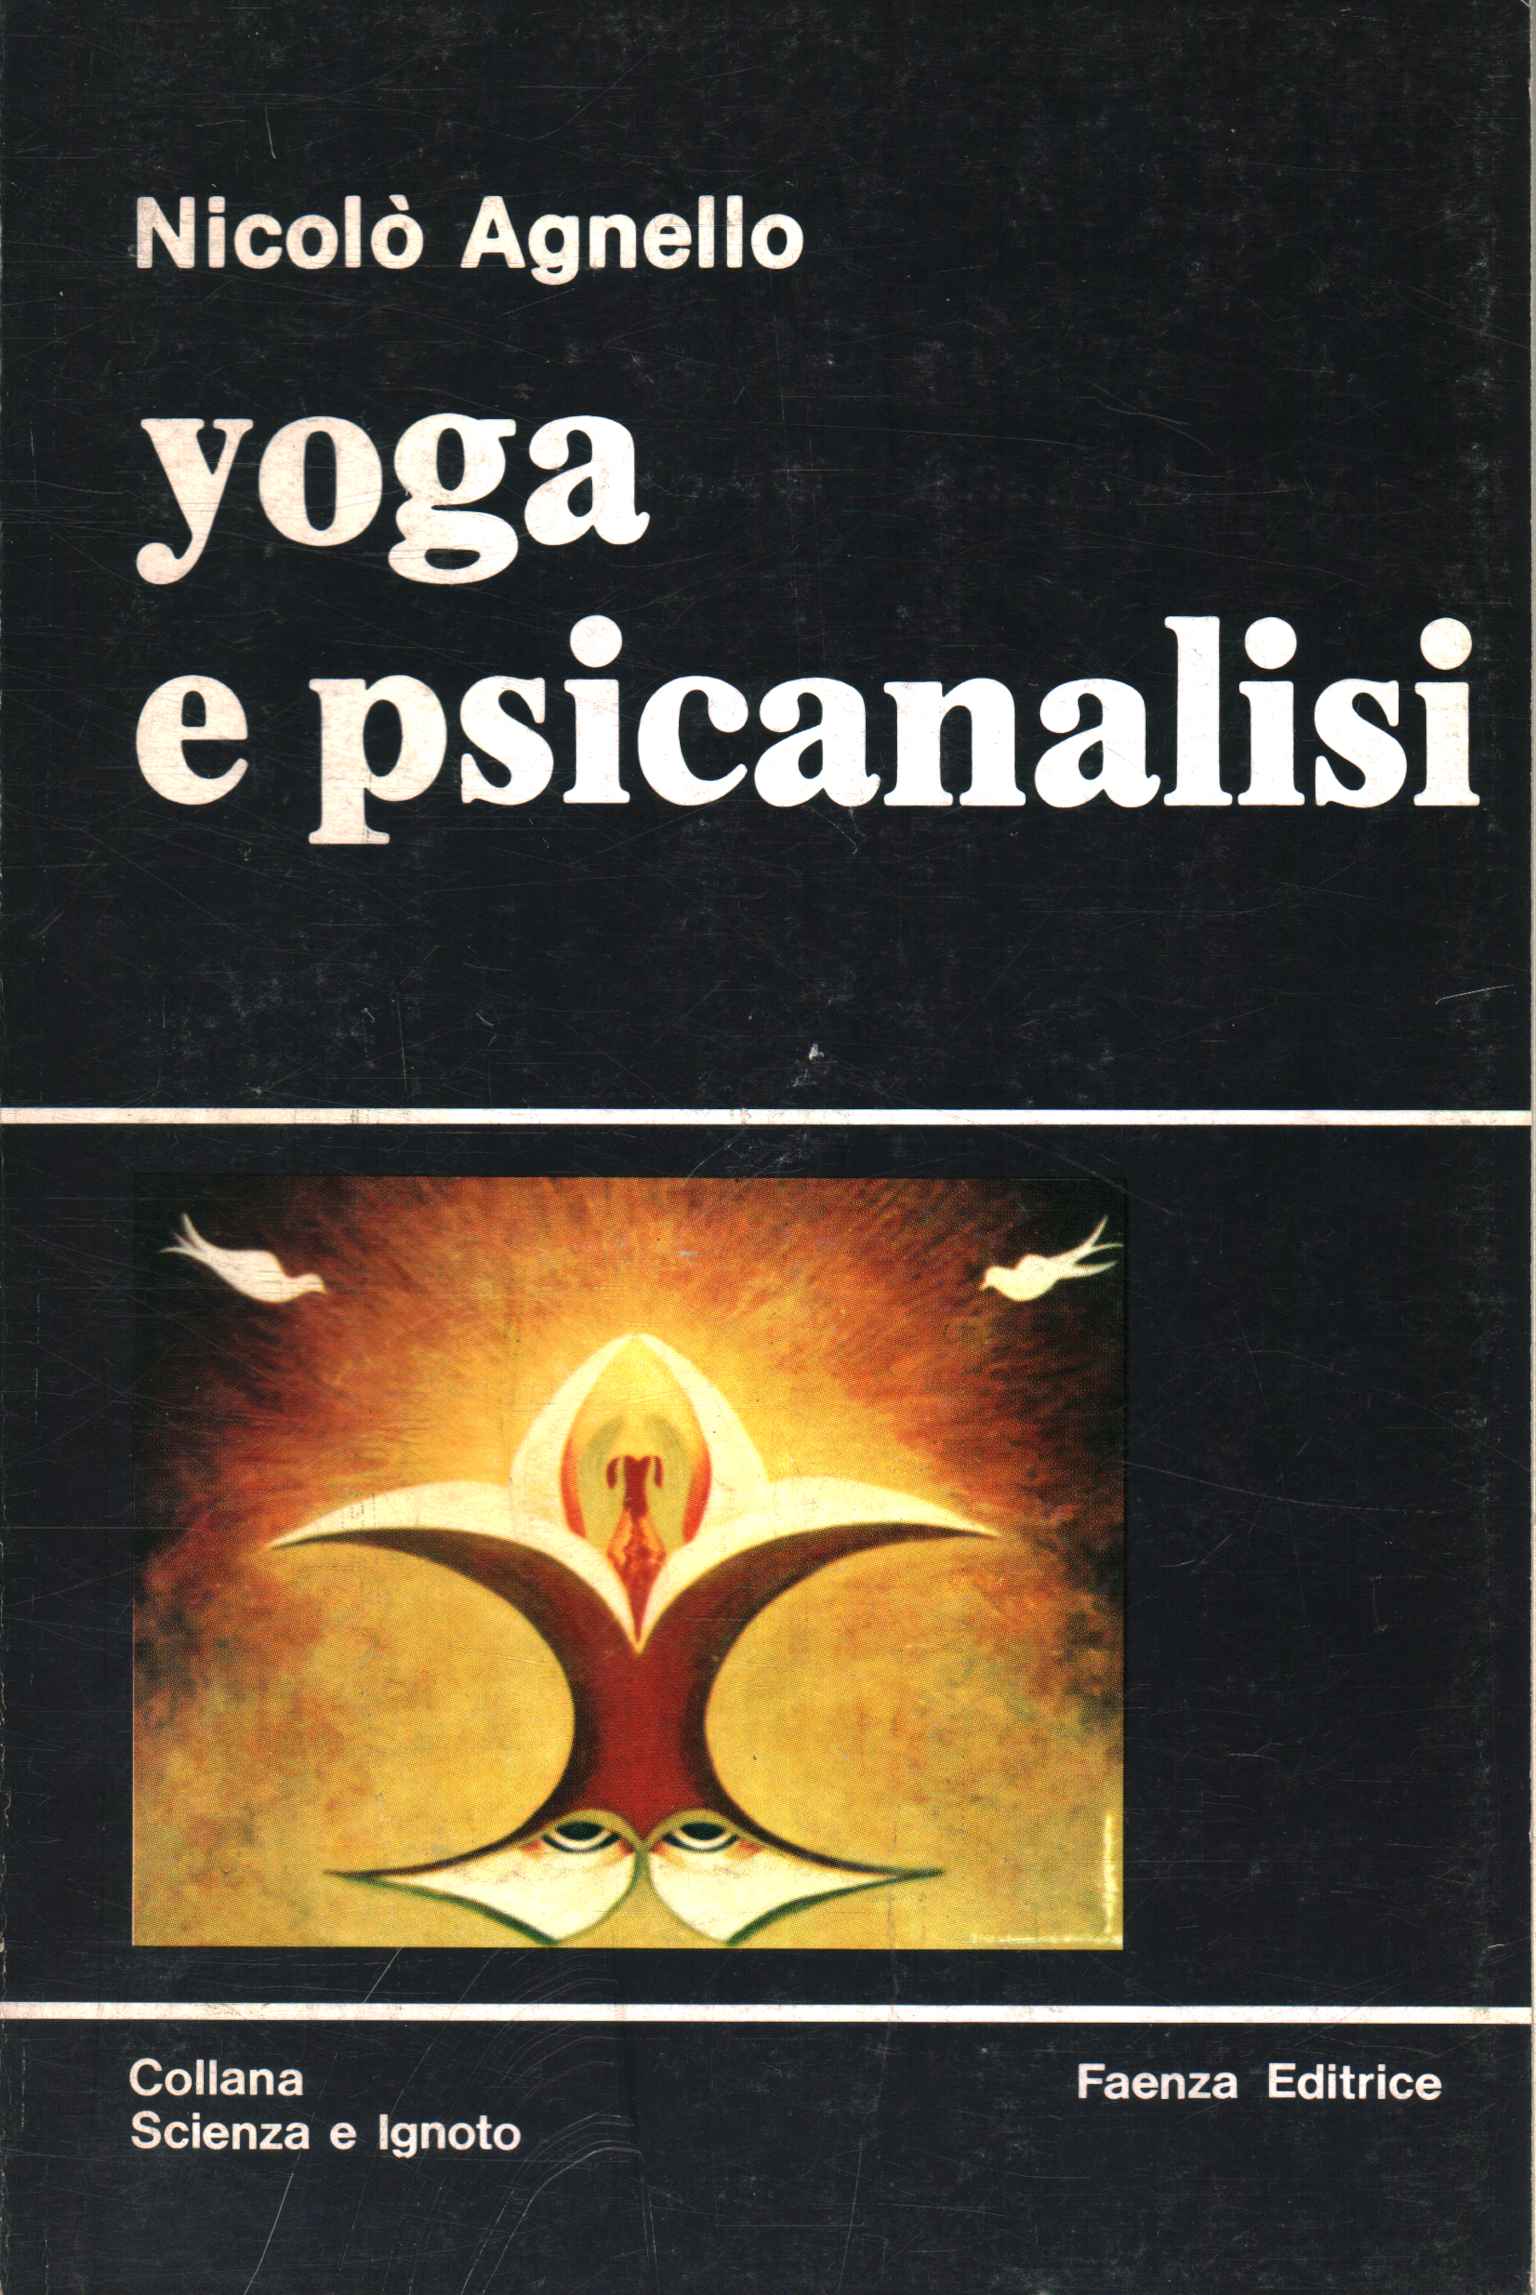 Yoga und Psychoanalyse